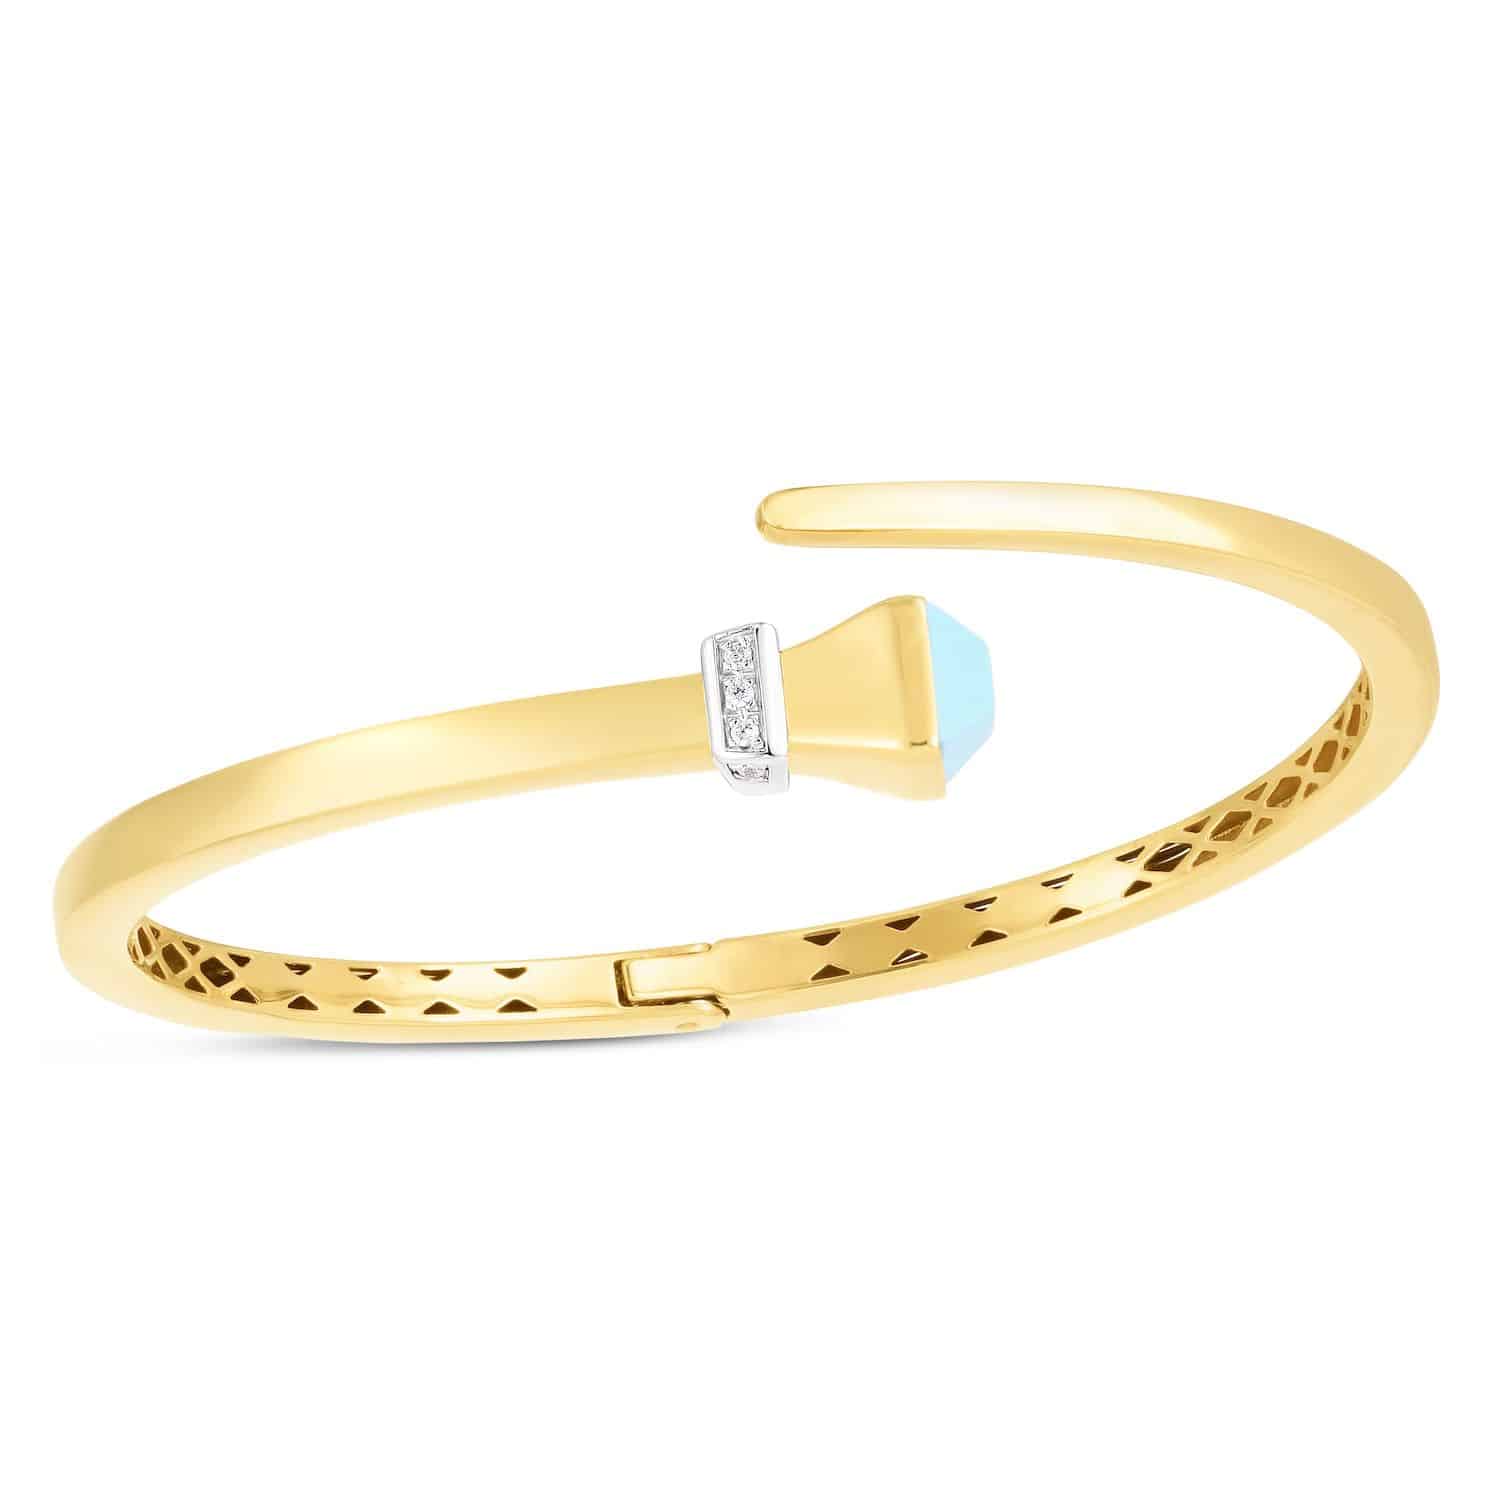 Natural Diamond 14K Yellow Gold Onyx Turquoise Wrap Hinged Bangle Bracelet 7.5" - Turquoise